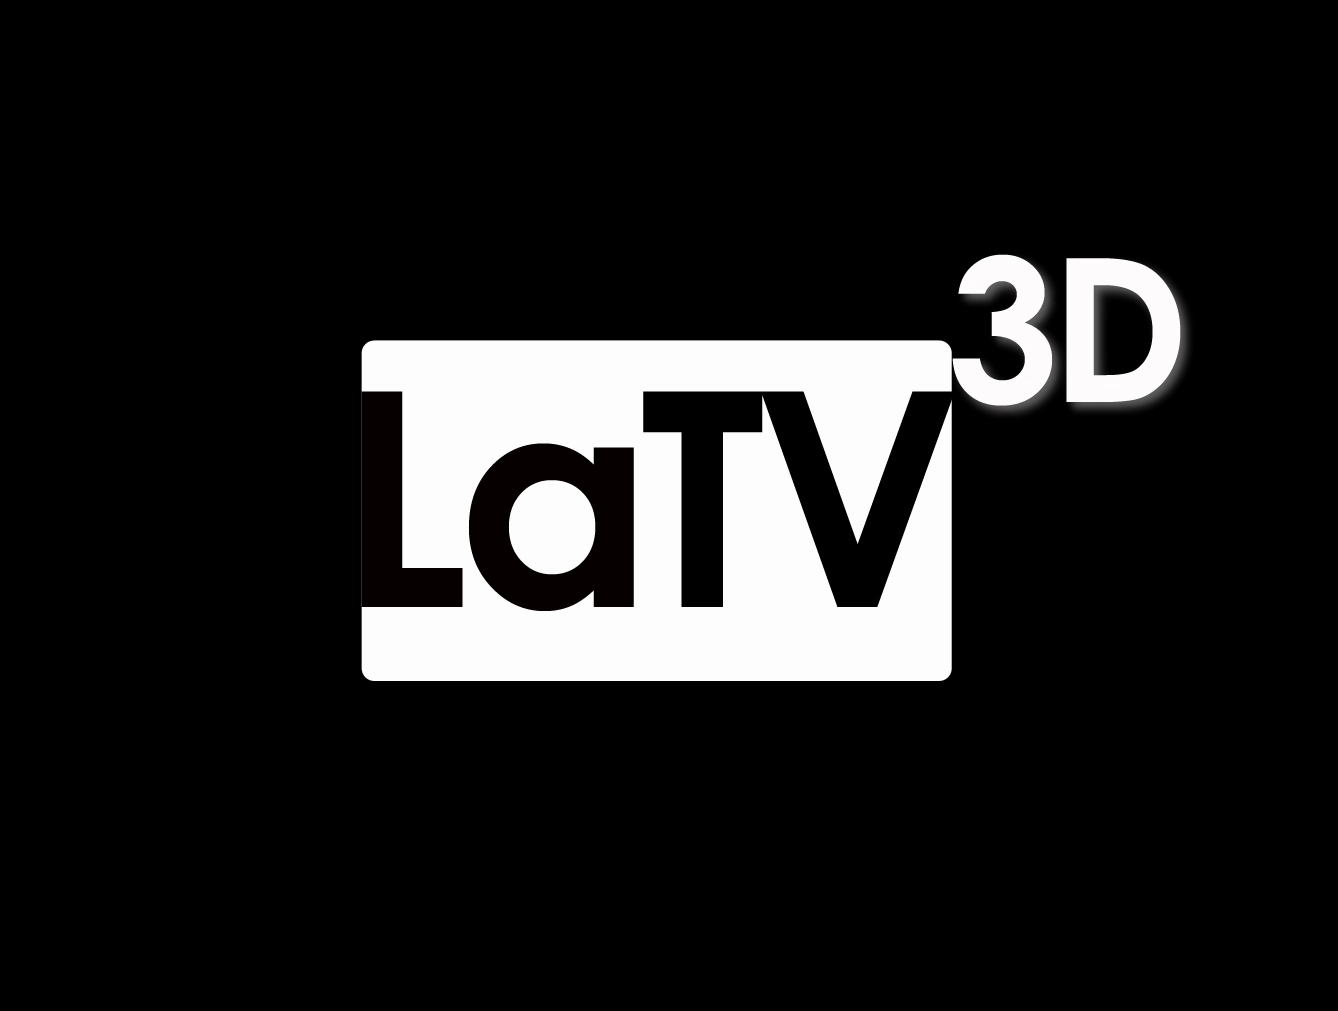 LaTV3D